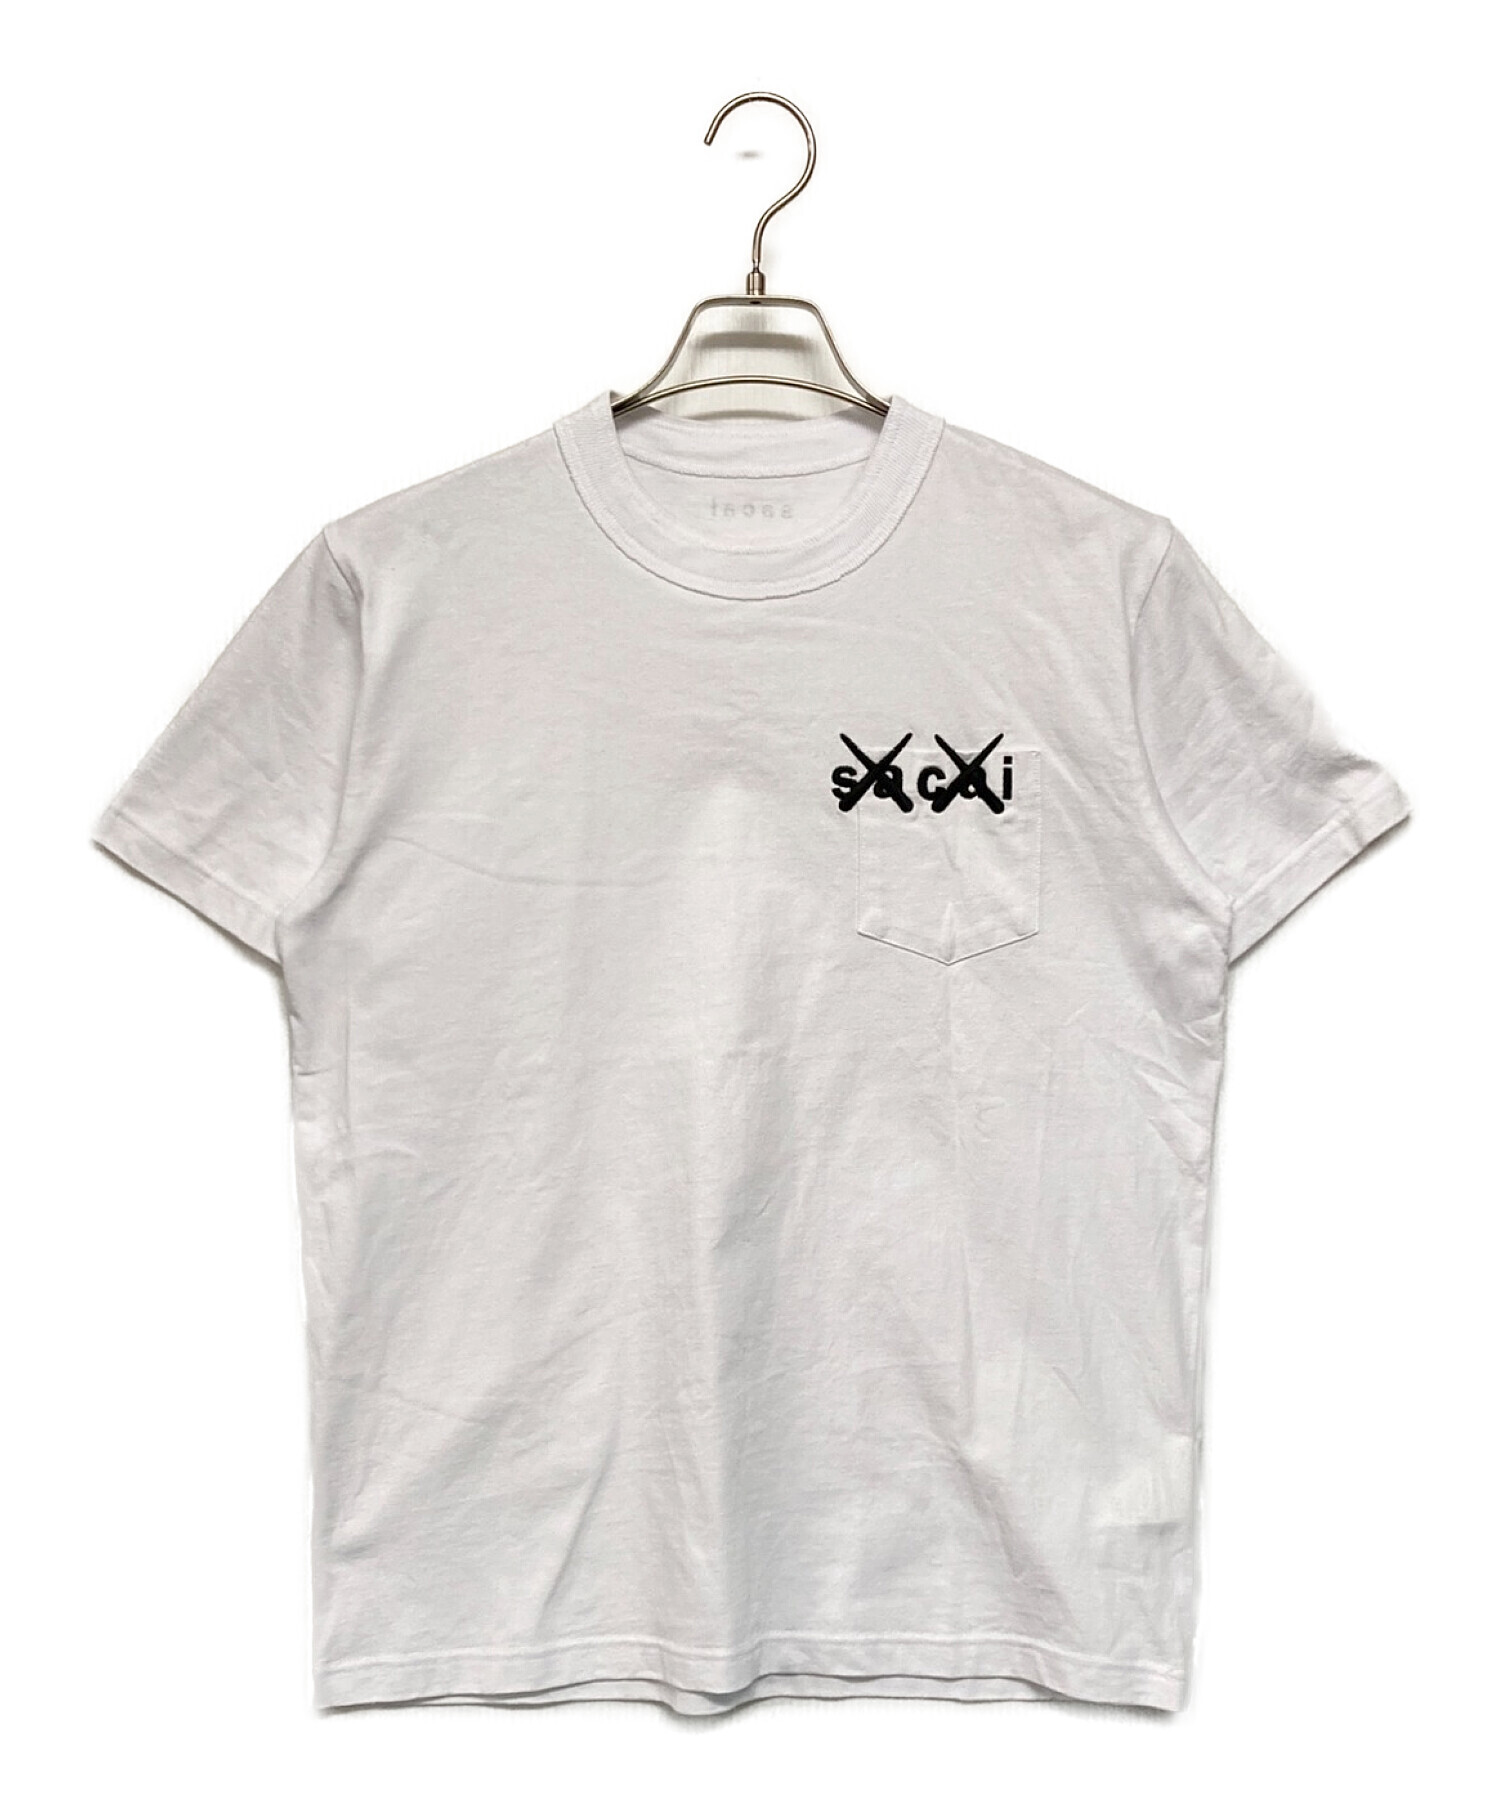 sacai (サカイ) KAWS (カウズ) Embroidery T-shirt ホワイト サイズ:SIZE 1